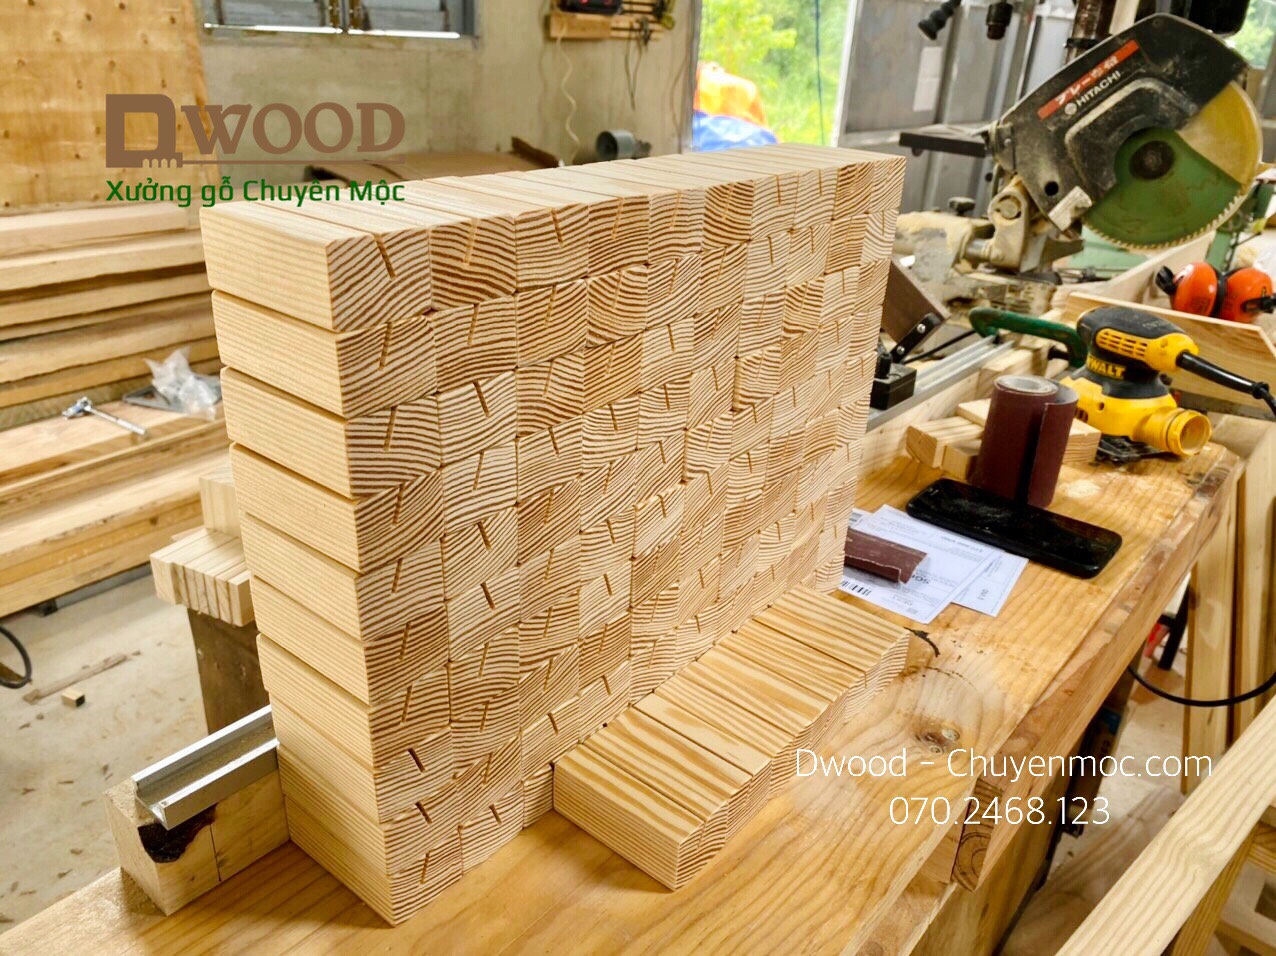 Đế gỗ thông đựng card Dwood